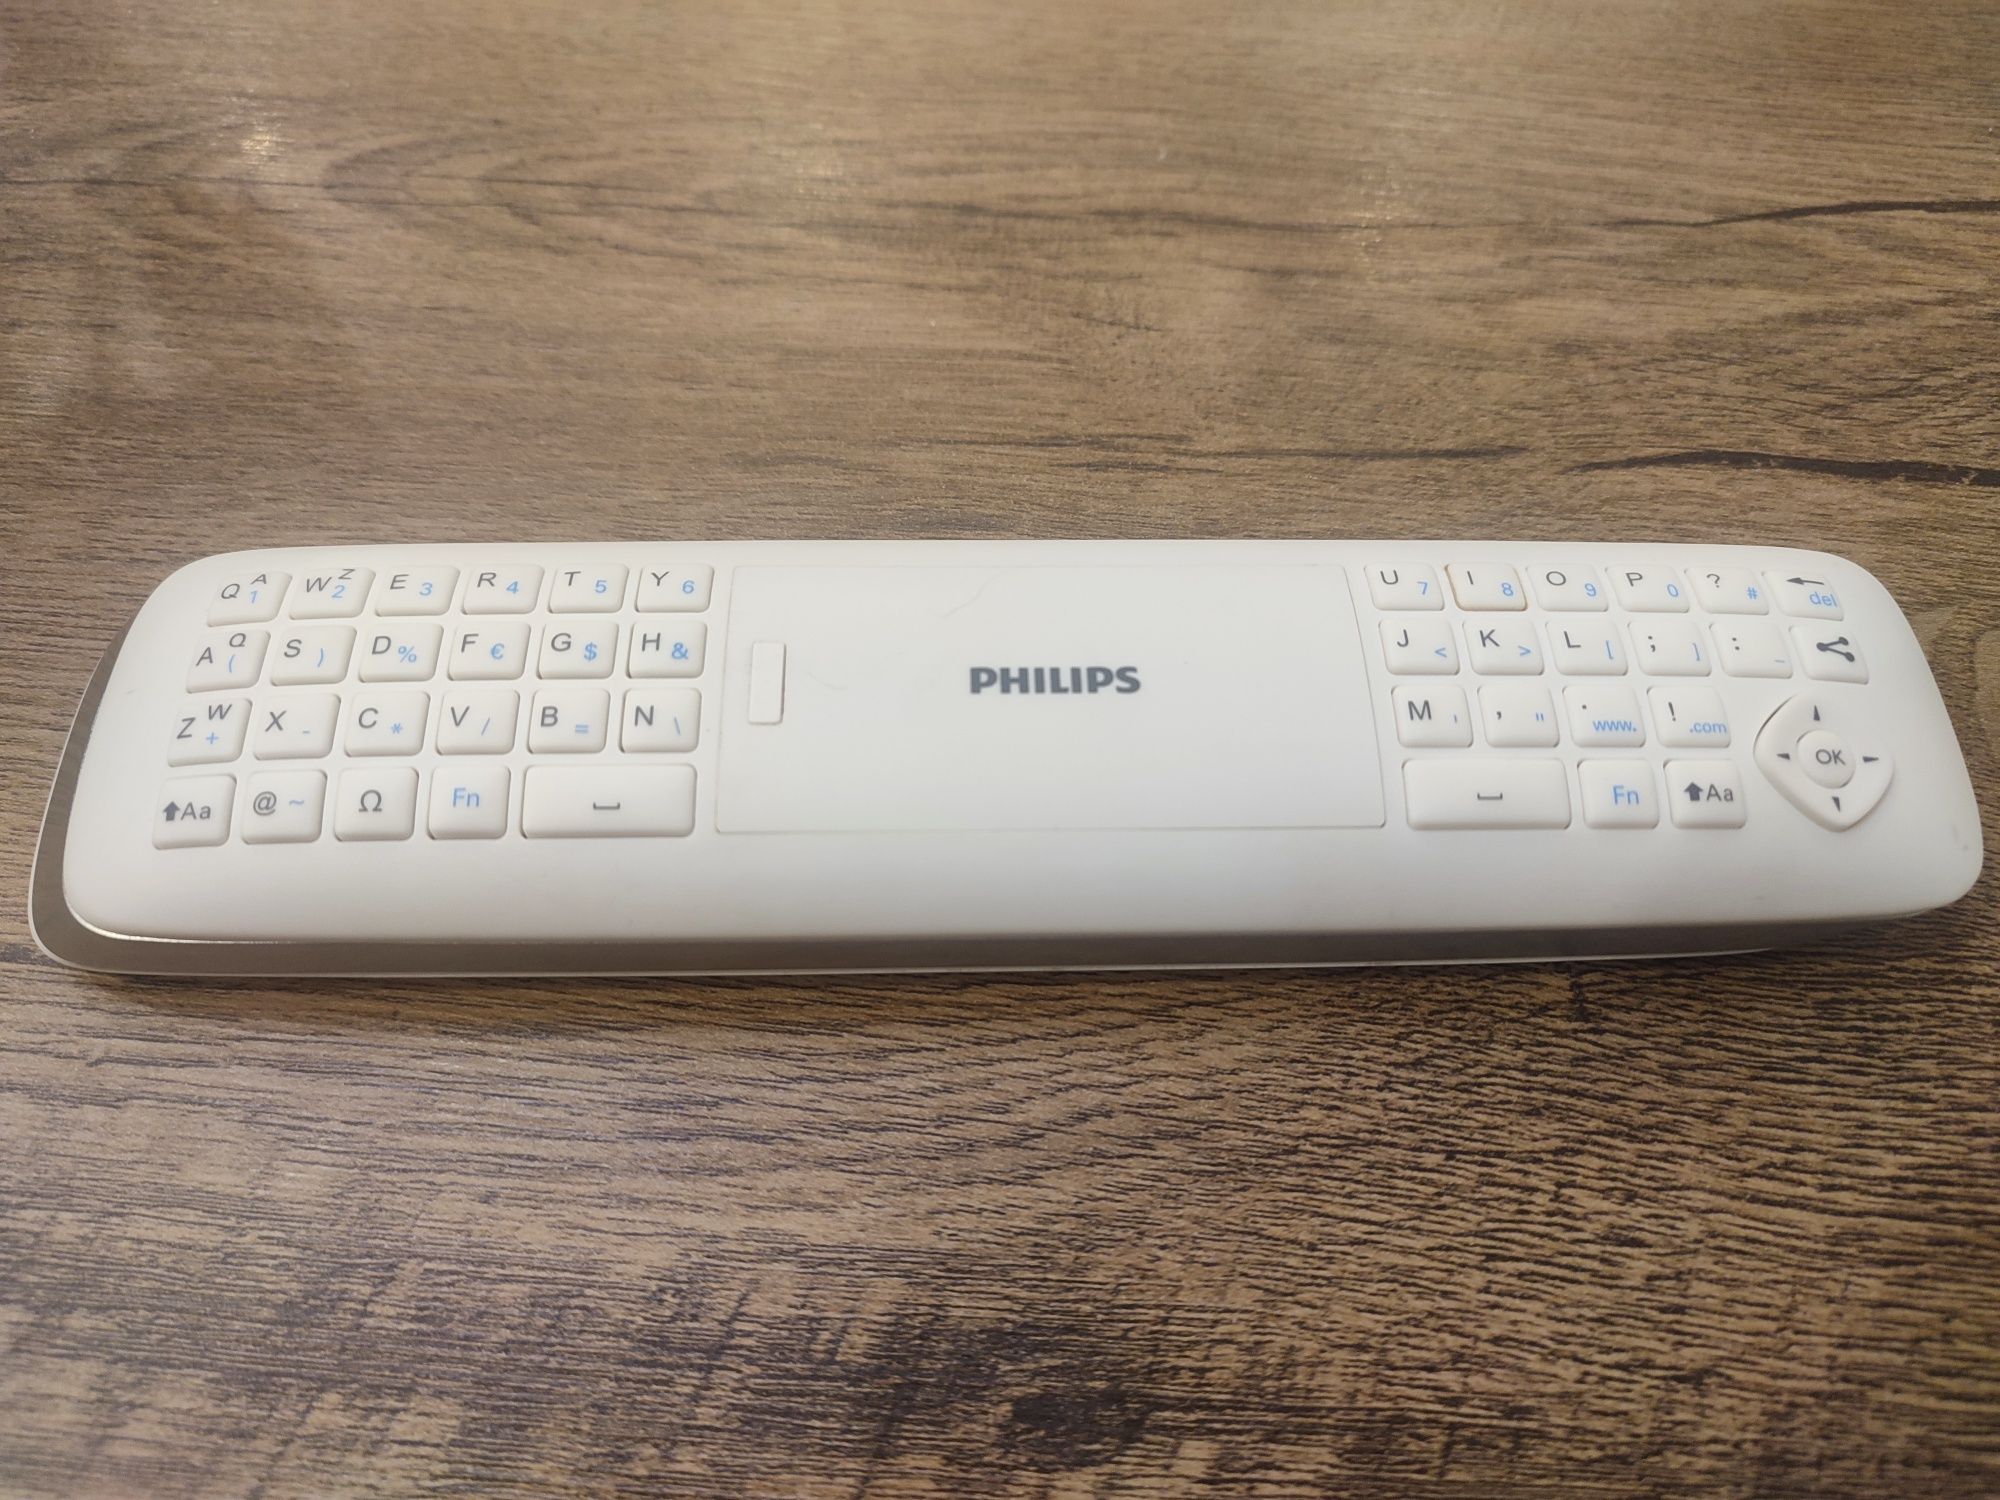 Pilot do telewizora Philips z klawiaturą